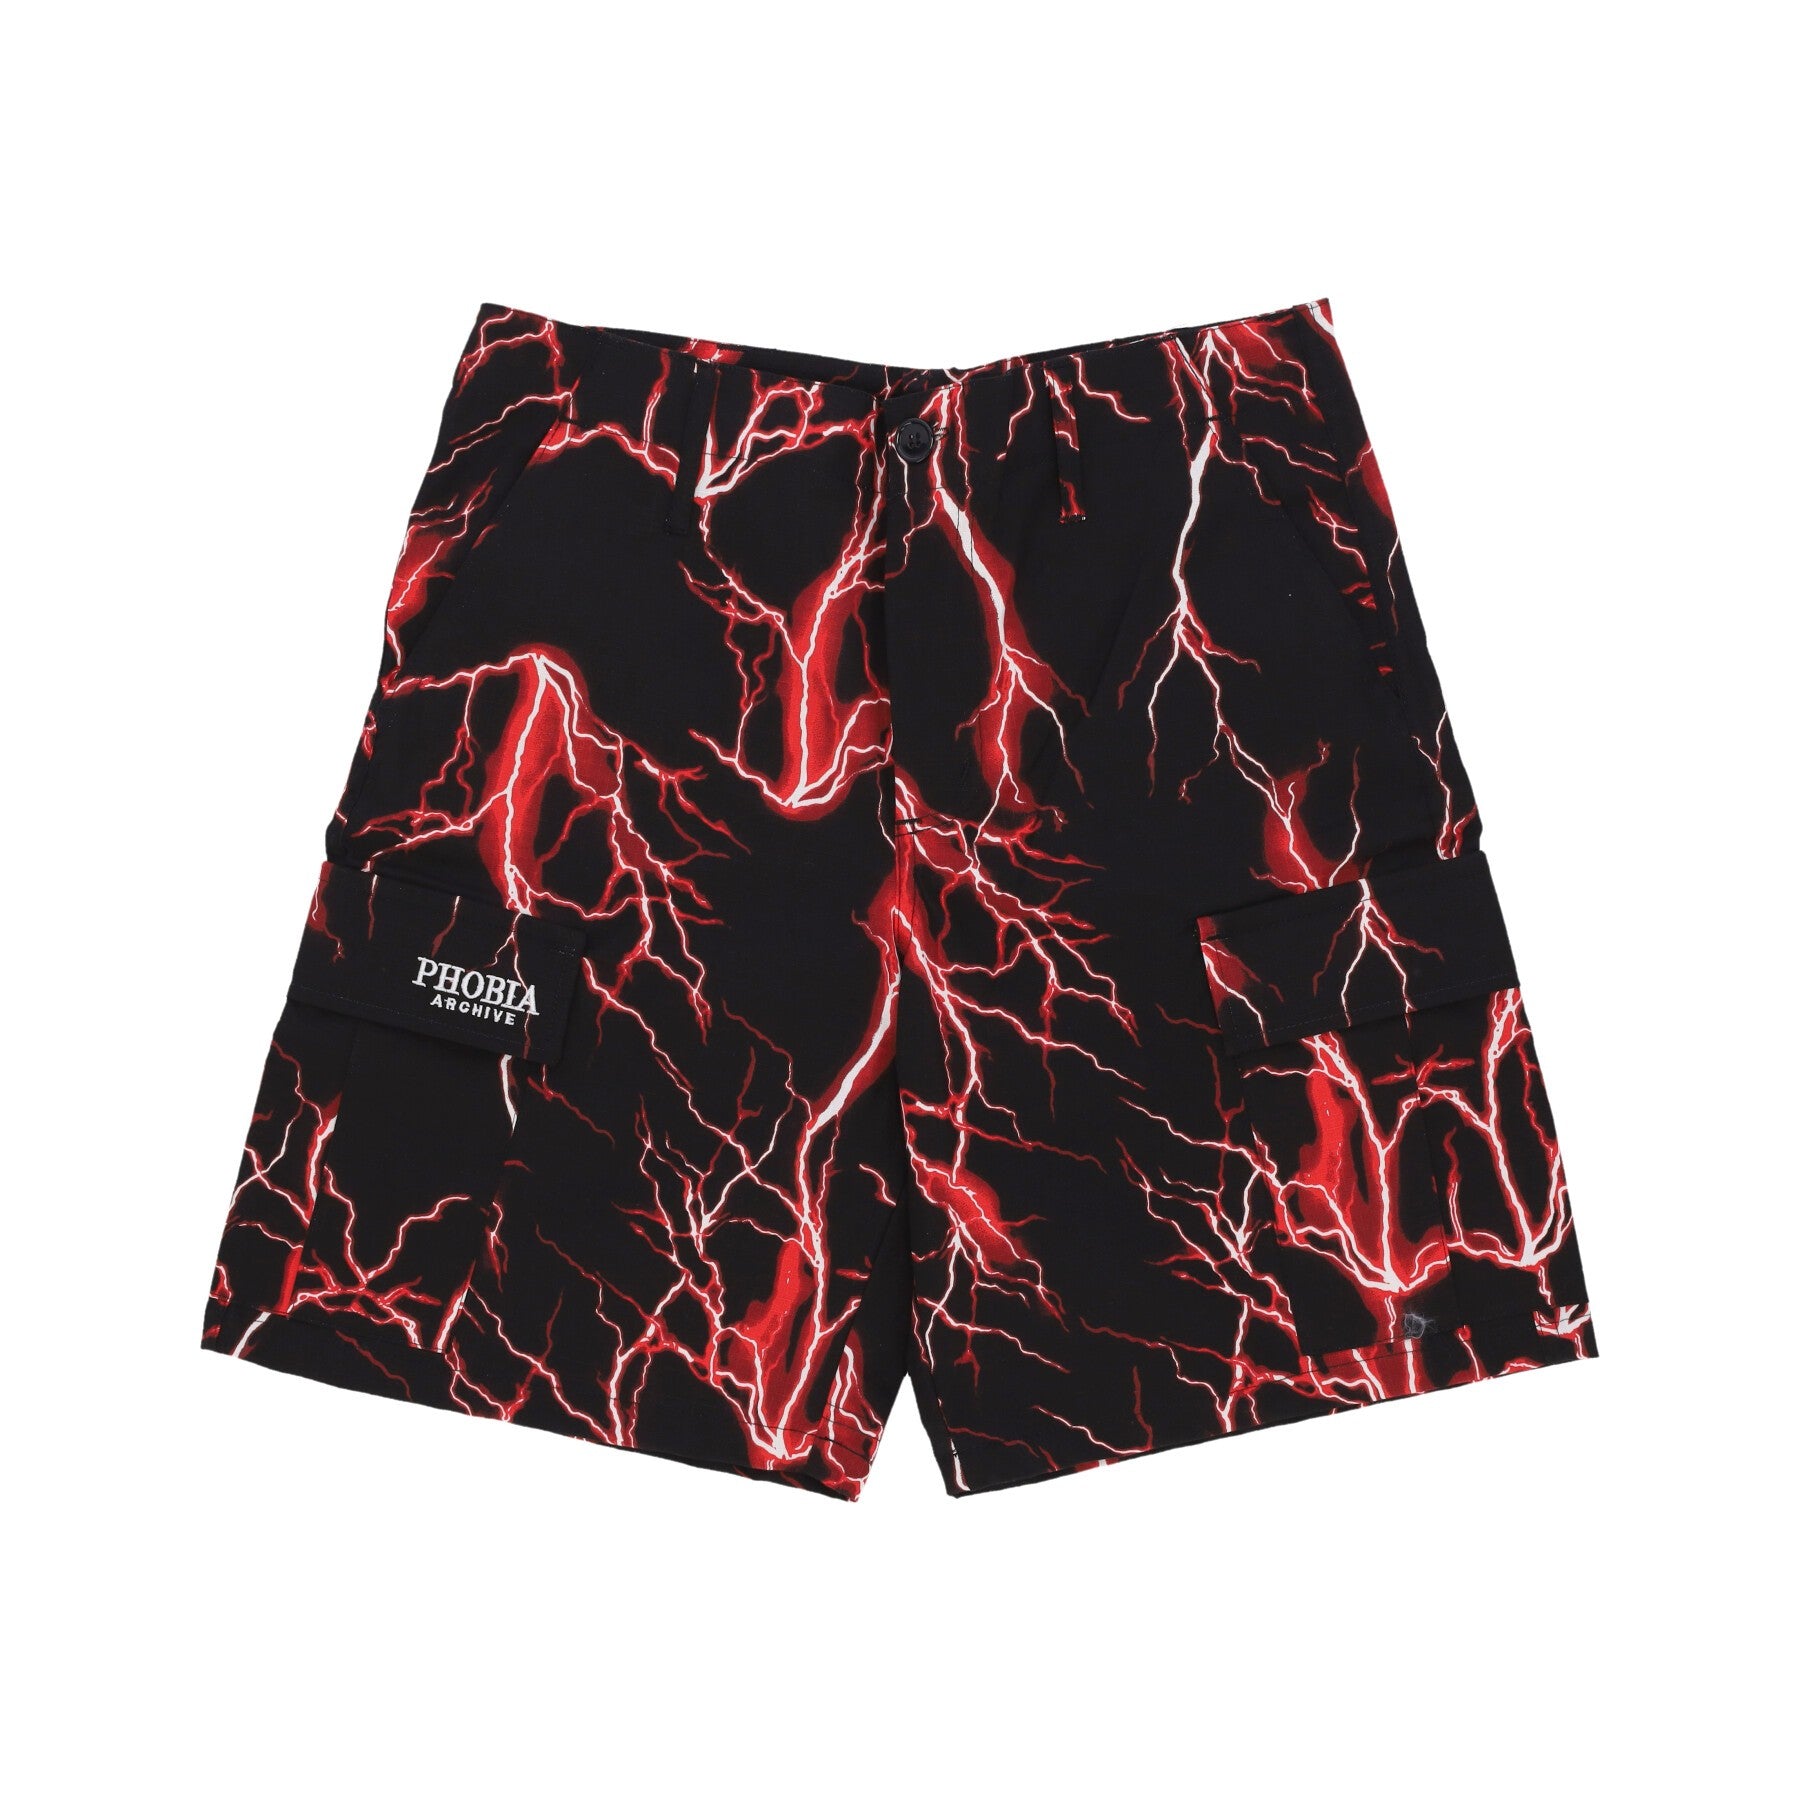 Phobia, Pantalone Corto Uomo All Over Lightning Cargo Shorts, Black/red